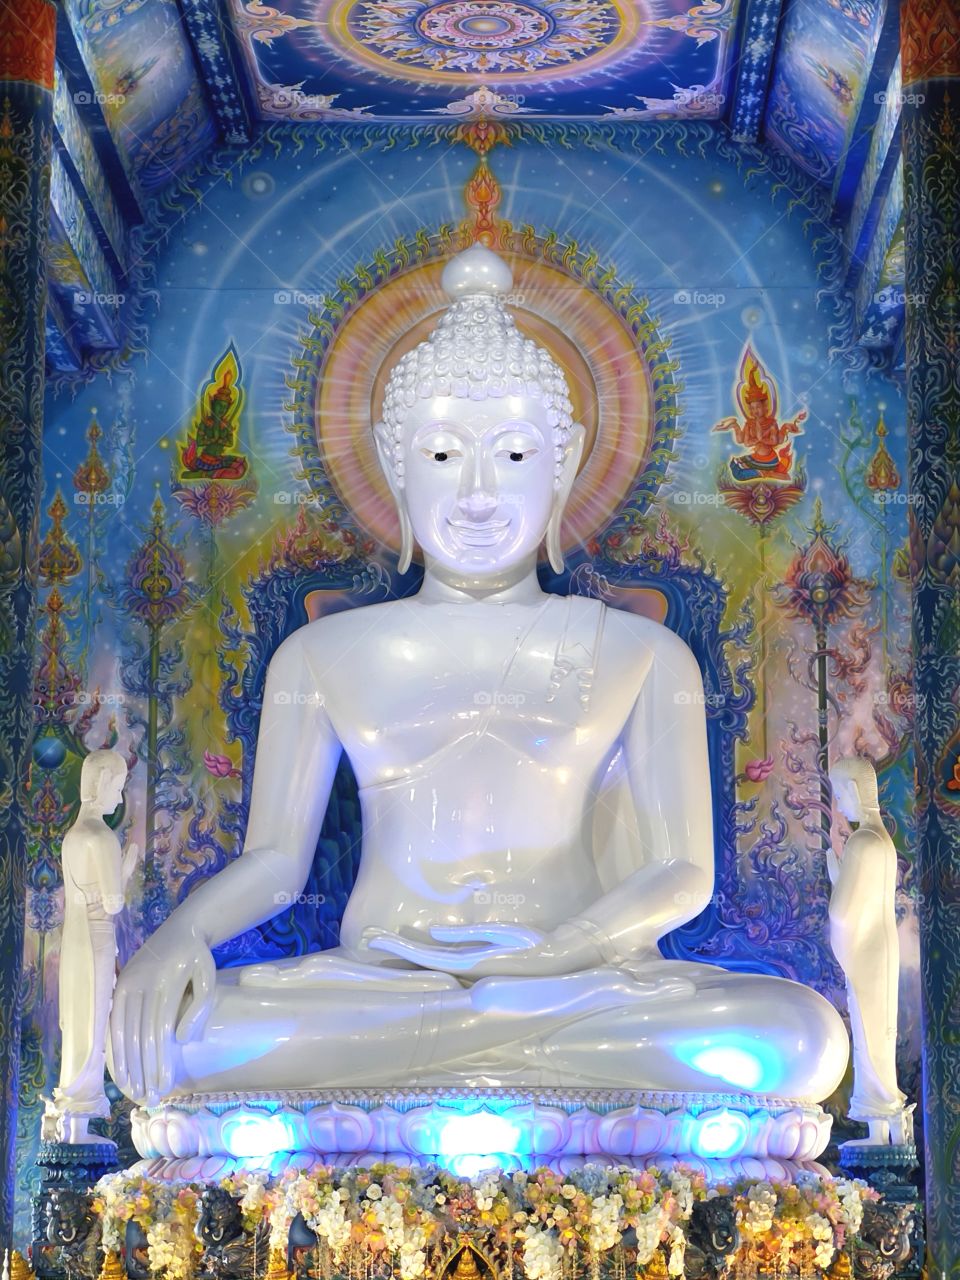 Art of Thailand Buddha statue "Wat Rong Seur Ten"